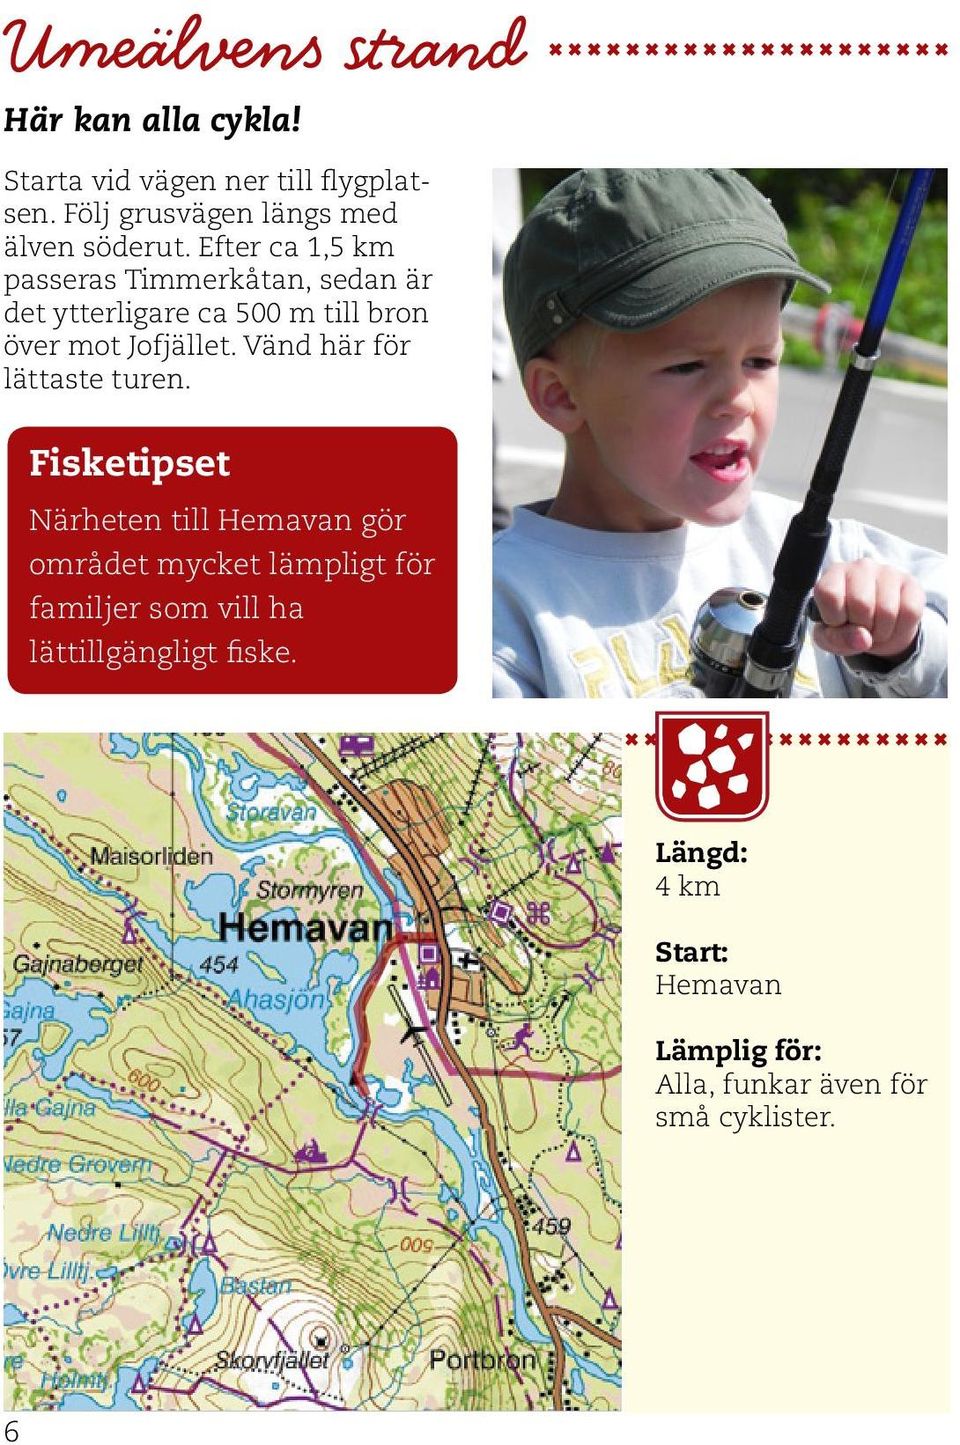 Efter ca 1,5 km passeras Timmerkåtan, sedan är det ytterligare ca 500 m till bron över mot Jofjället.